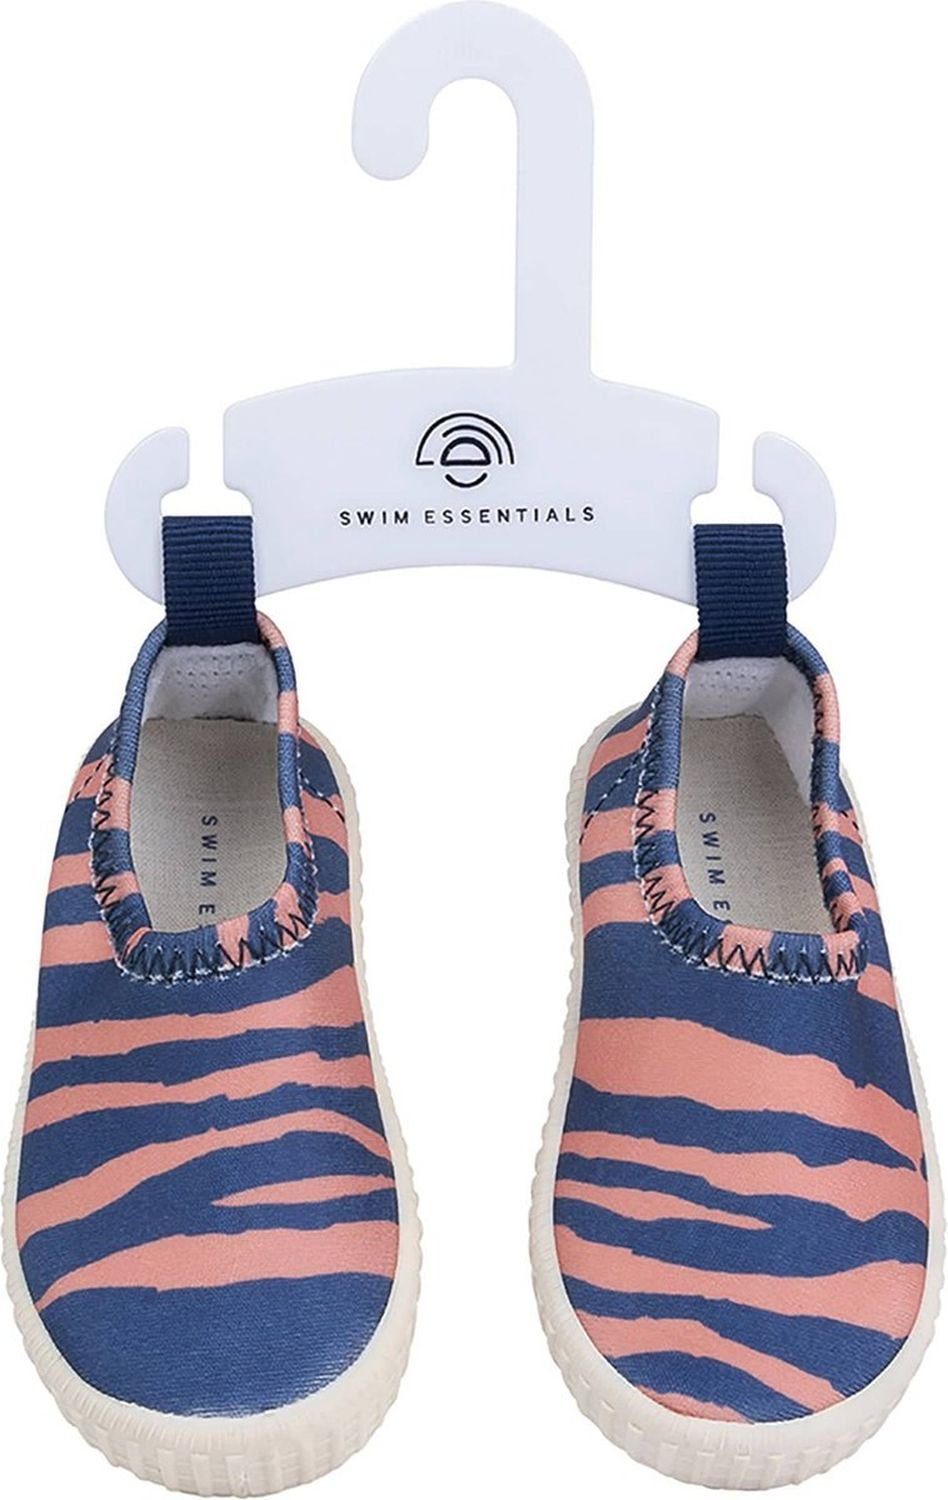 Swim rutschfeste Zebra Aquaschuh blau/orange Essentials Swim Wasserschuhe, Essentials Kinder für